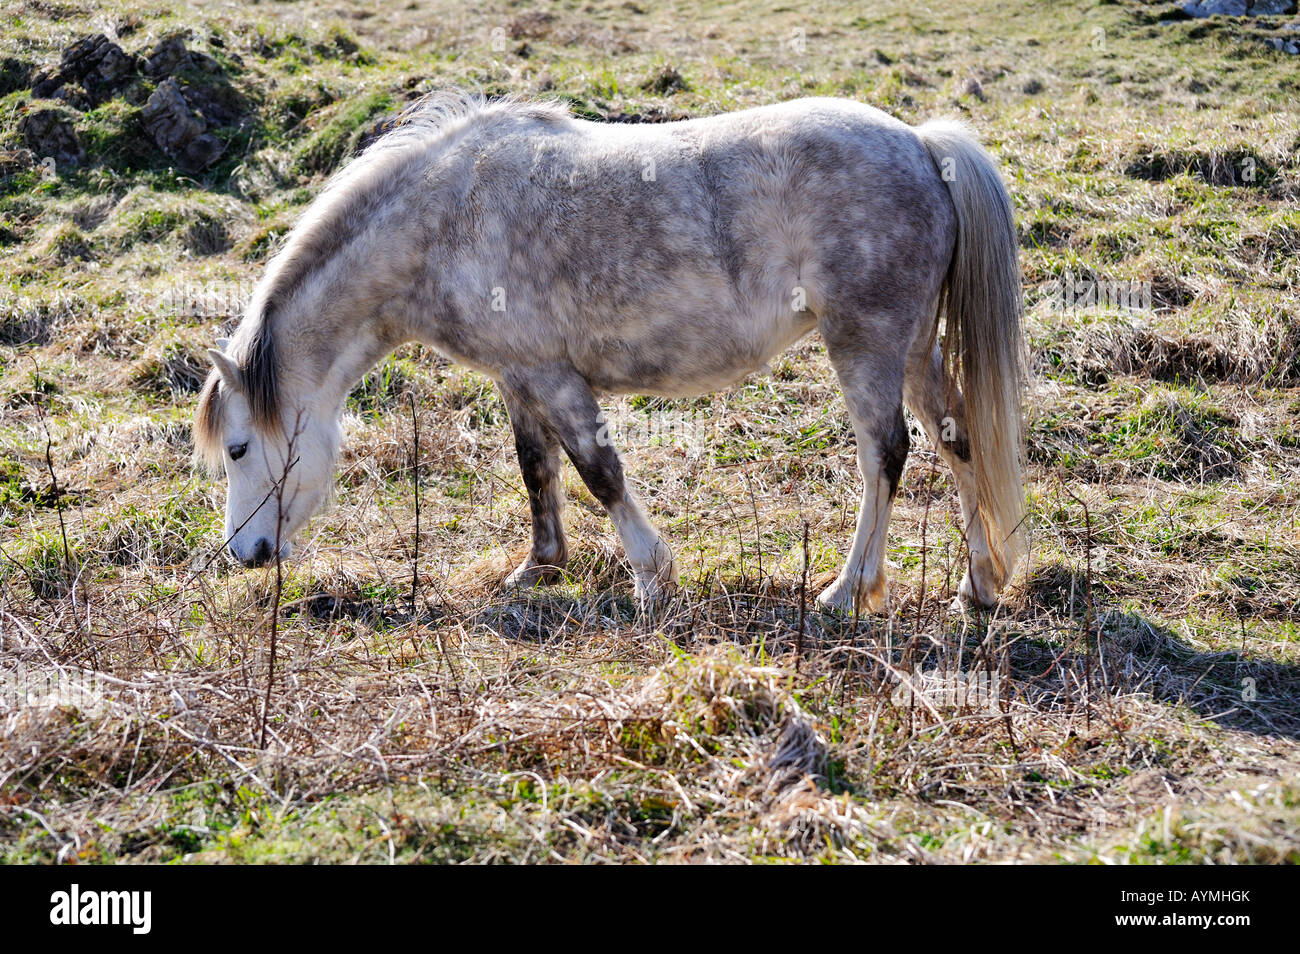 Wildes Pony am Llanddwyn Insel Ynys Llanddwyn Anglesey Ynys Mon Nord Wales Cymru UK nur redaktionelle Nutzung Stockfoto